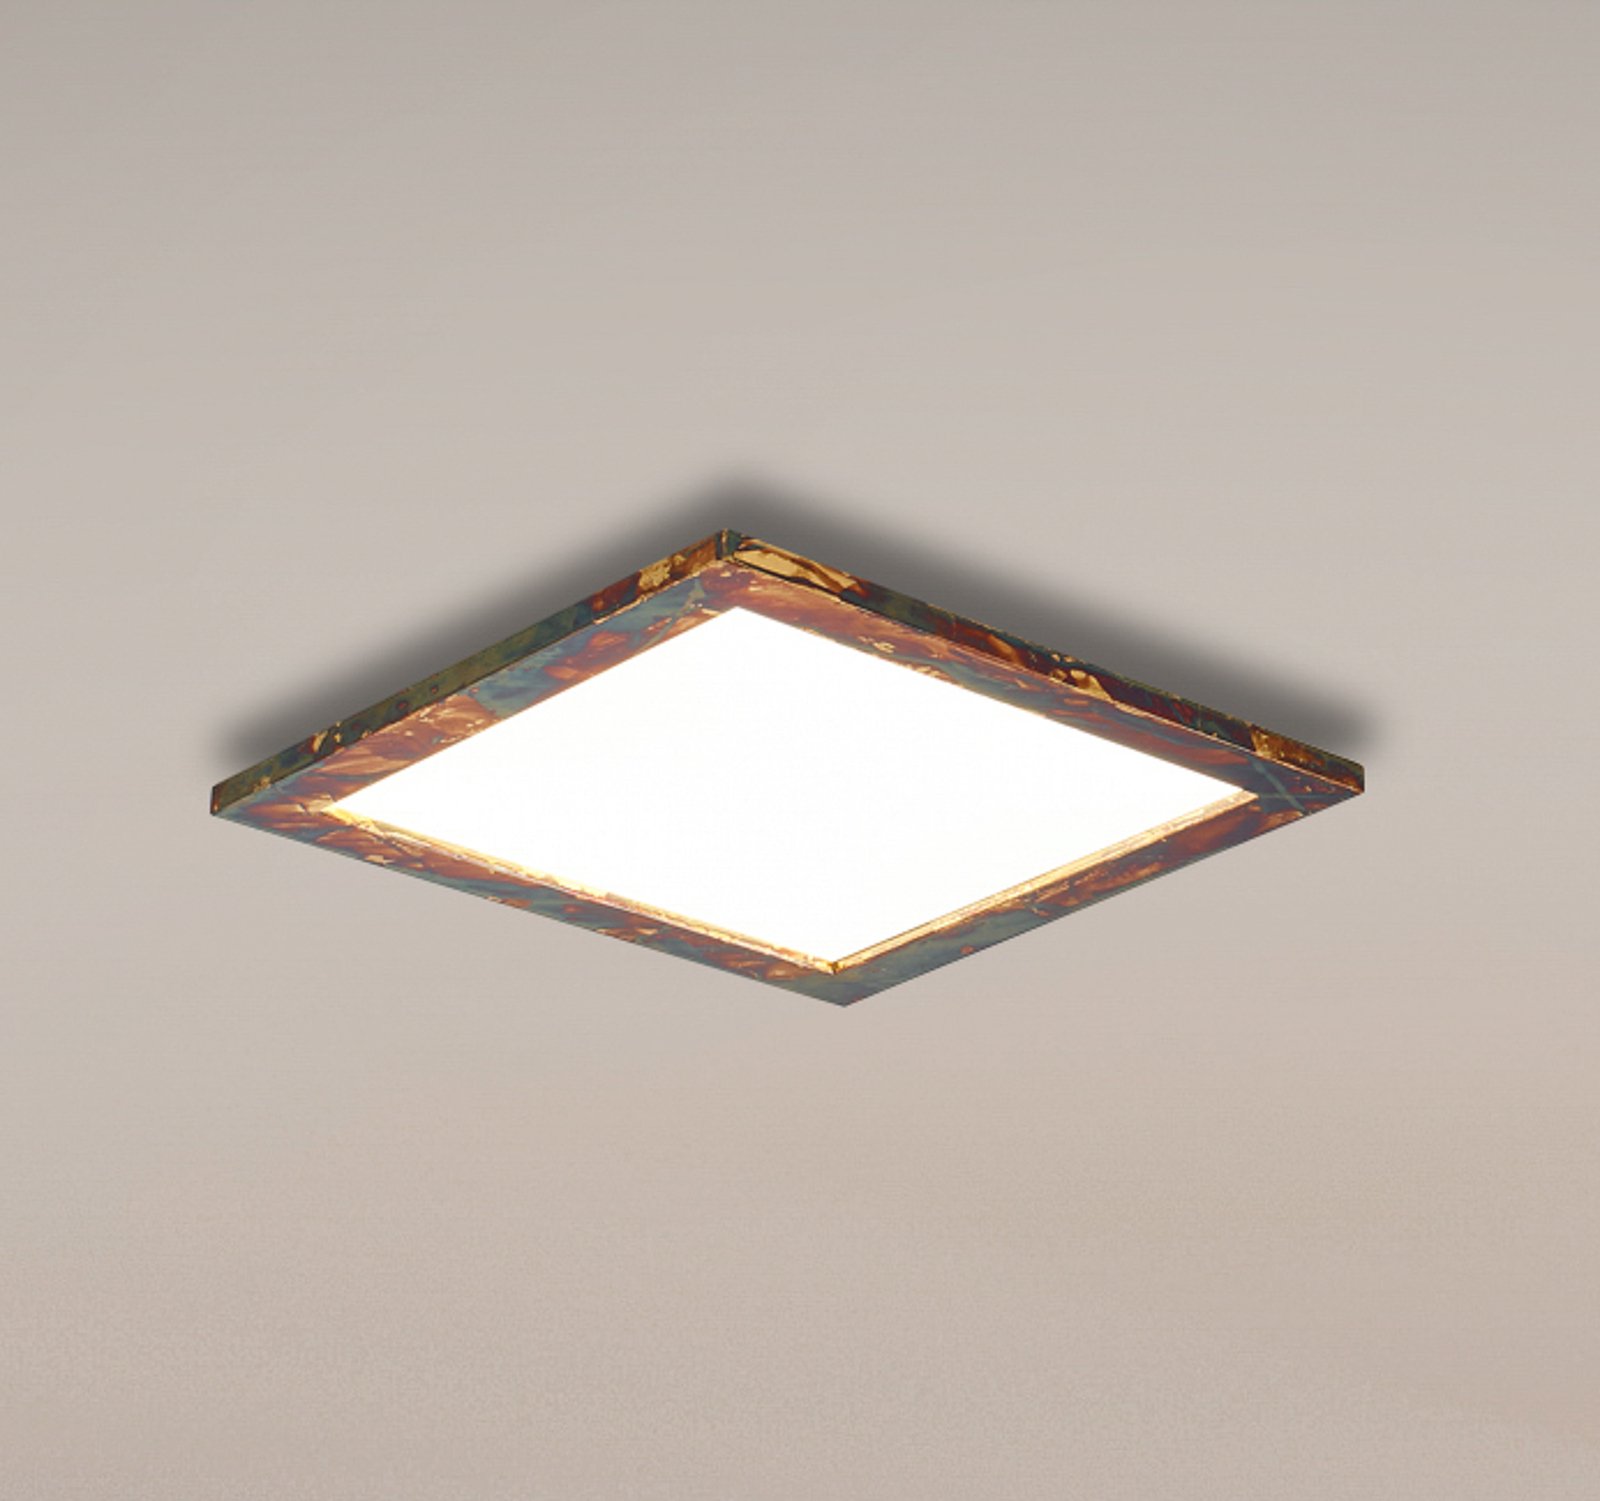 Quitani Aurinor panel LED, color dorado, 45 cm